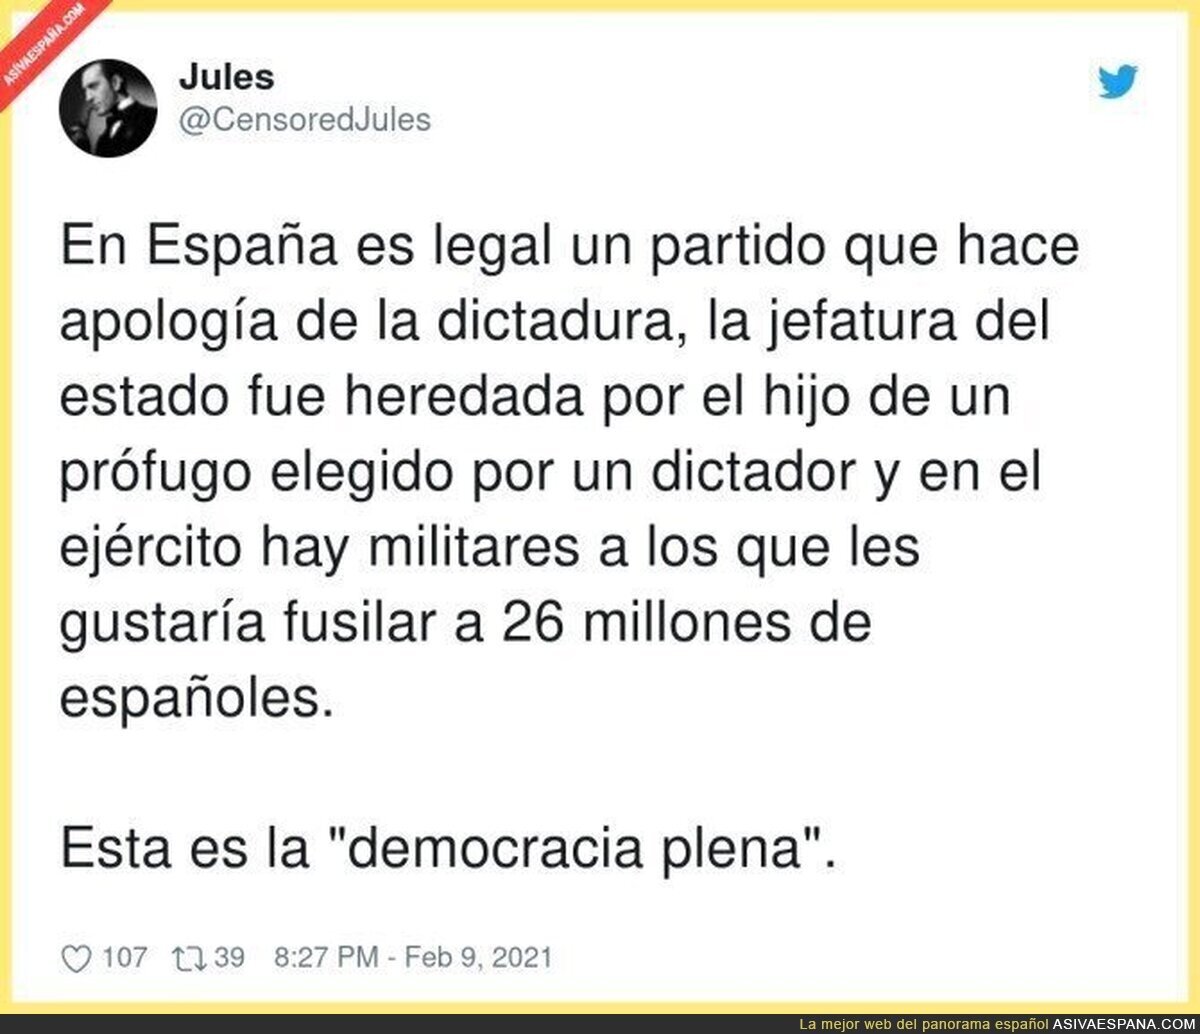 La democracia plena española